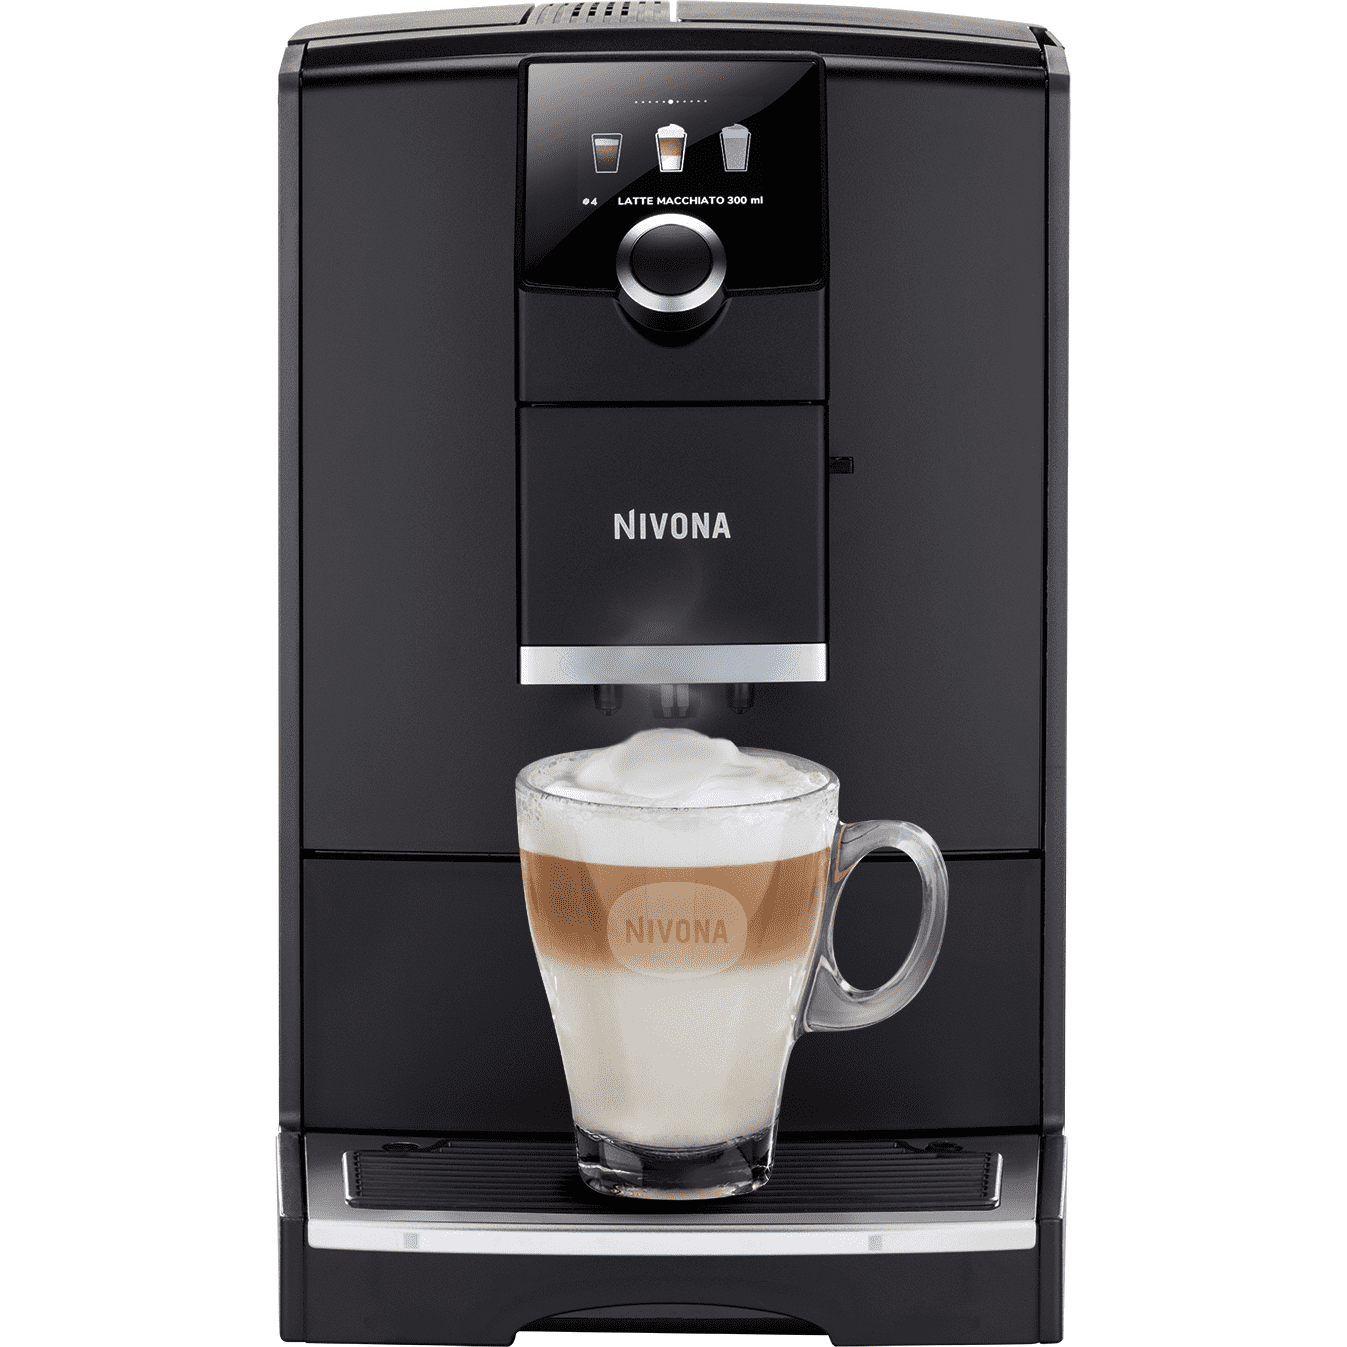 Nivona 790 - Mattschwarz - Chrom NICR 7'90 - 5 Jahre Garantie  Nivona Default Title   - Rheinland.Coffee